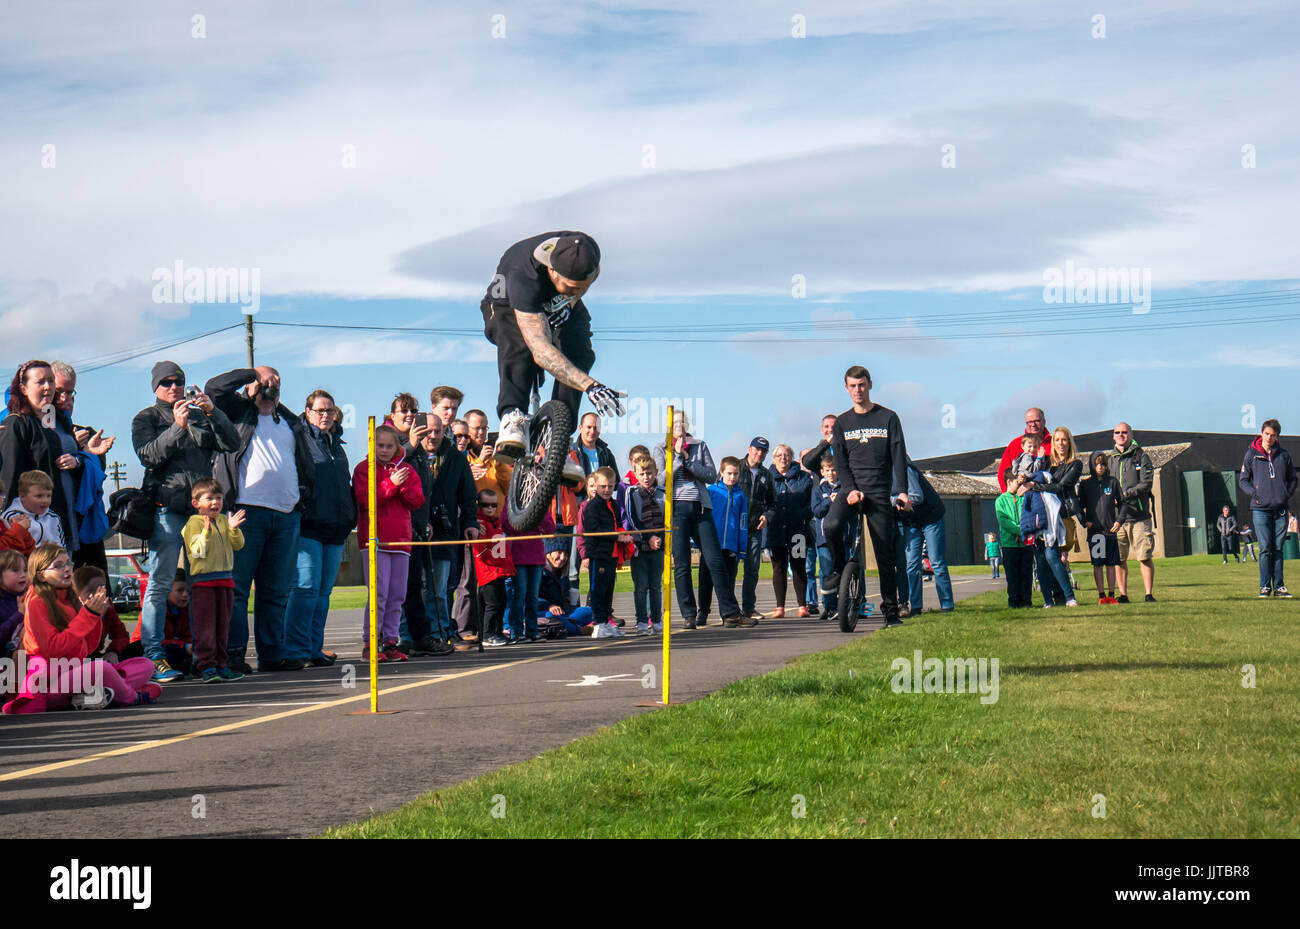 Jason Auld von Team Voodoo Einräder Durchführen einer stunt Sprung am Rad und Kotflügel Event 2016, East Fortune, East Lothian, Schottland, Großbritannien Stockfoto